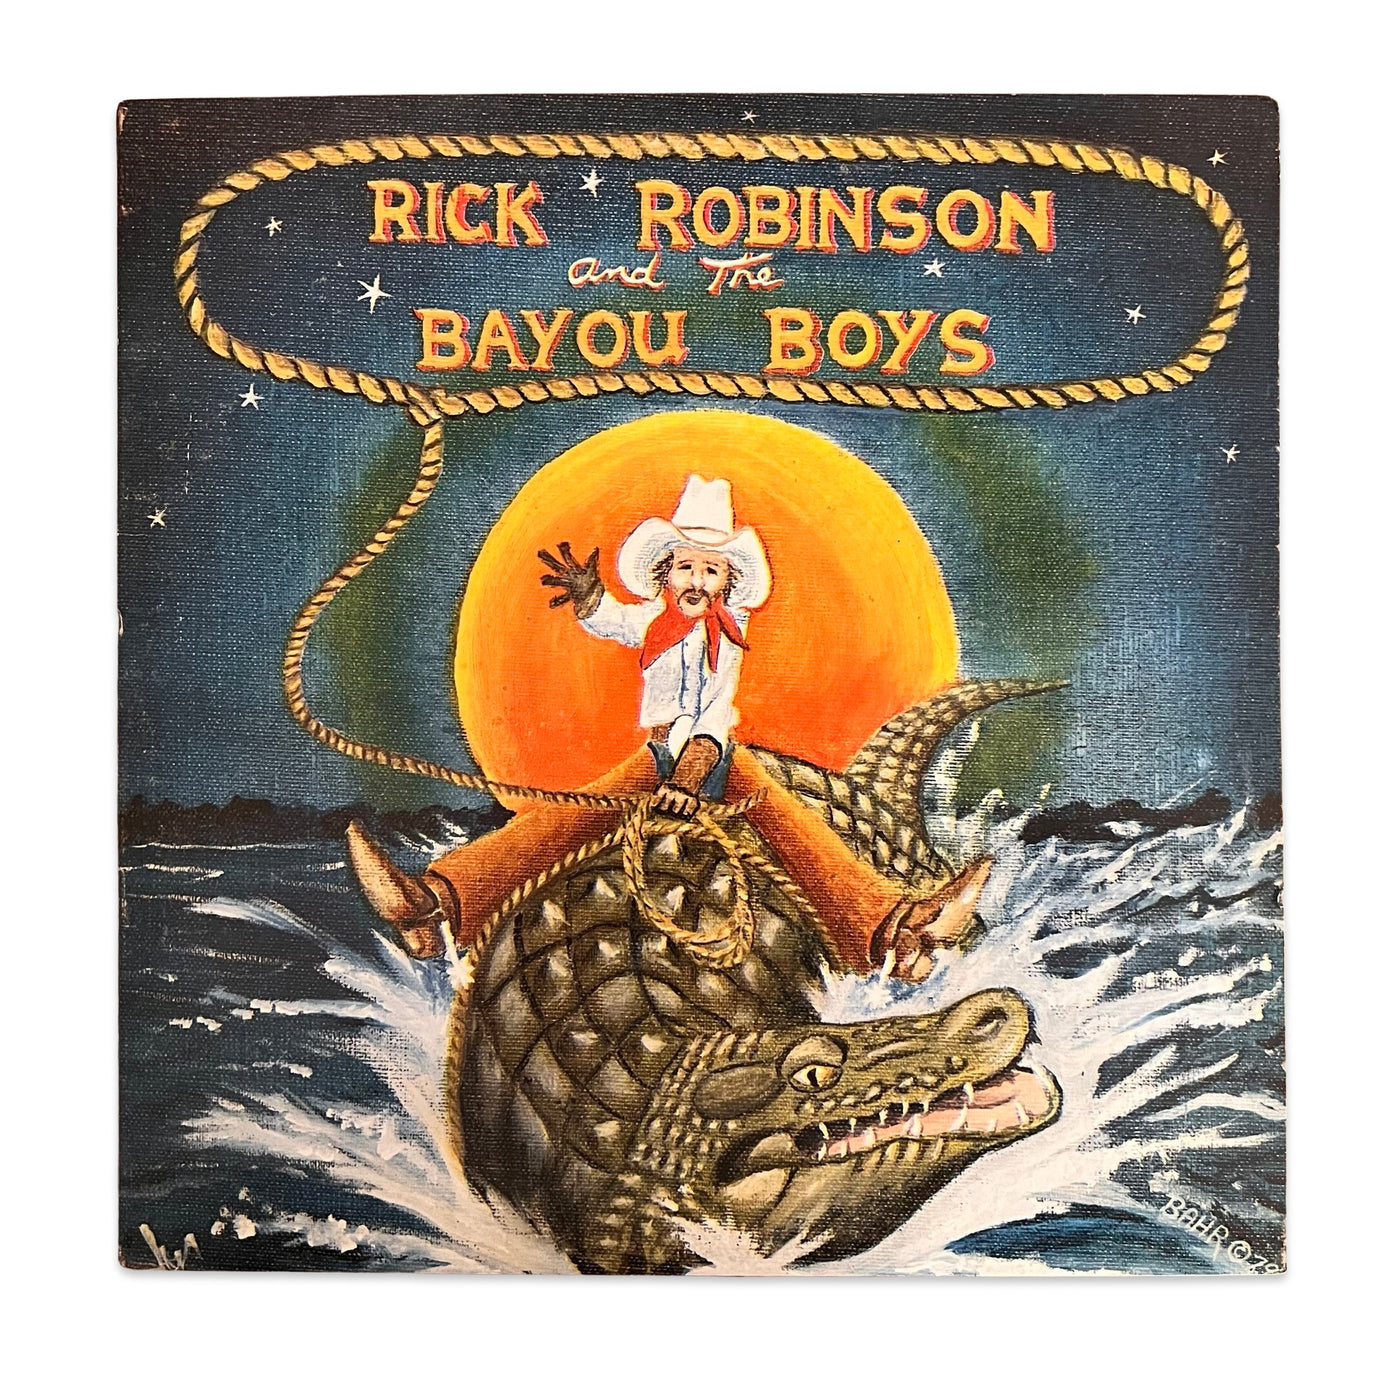 Rick Robinson And The Bayou Boys – Rick Robinson And The Bayou Boys